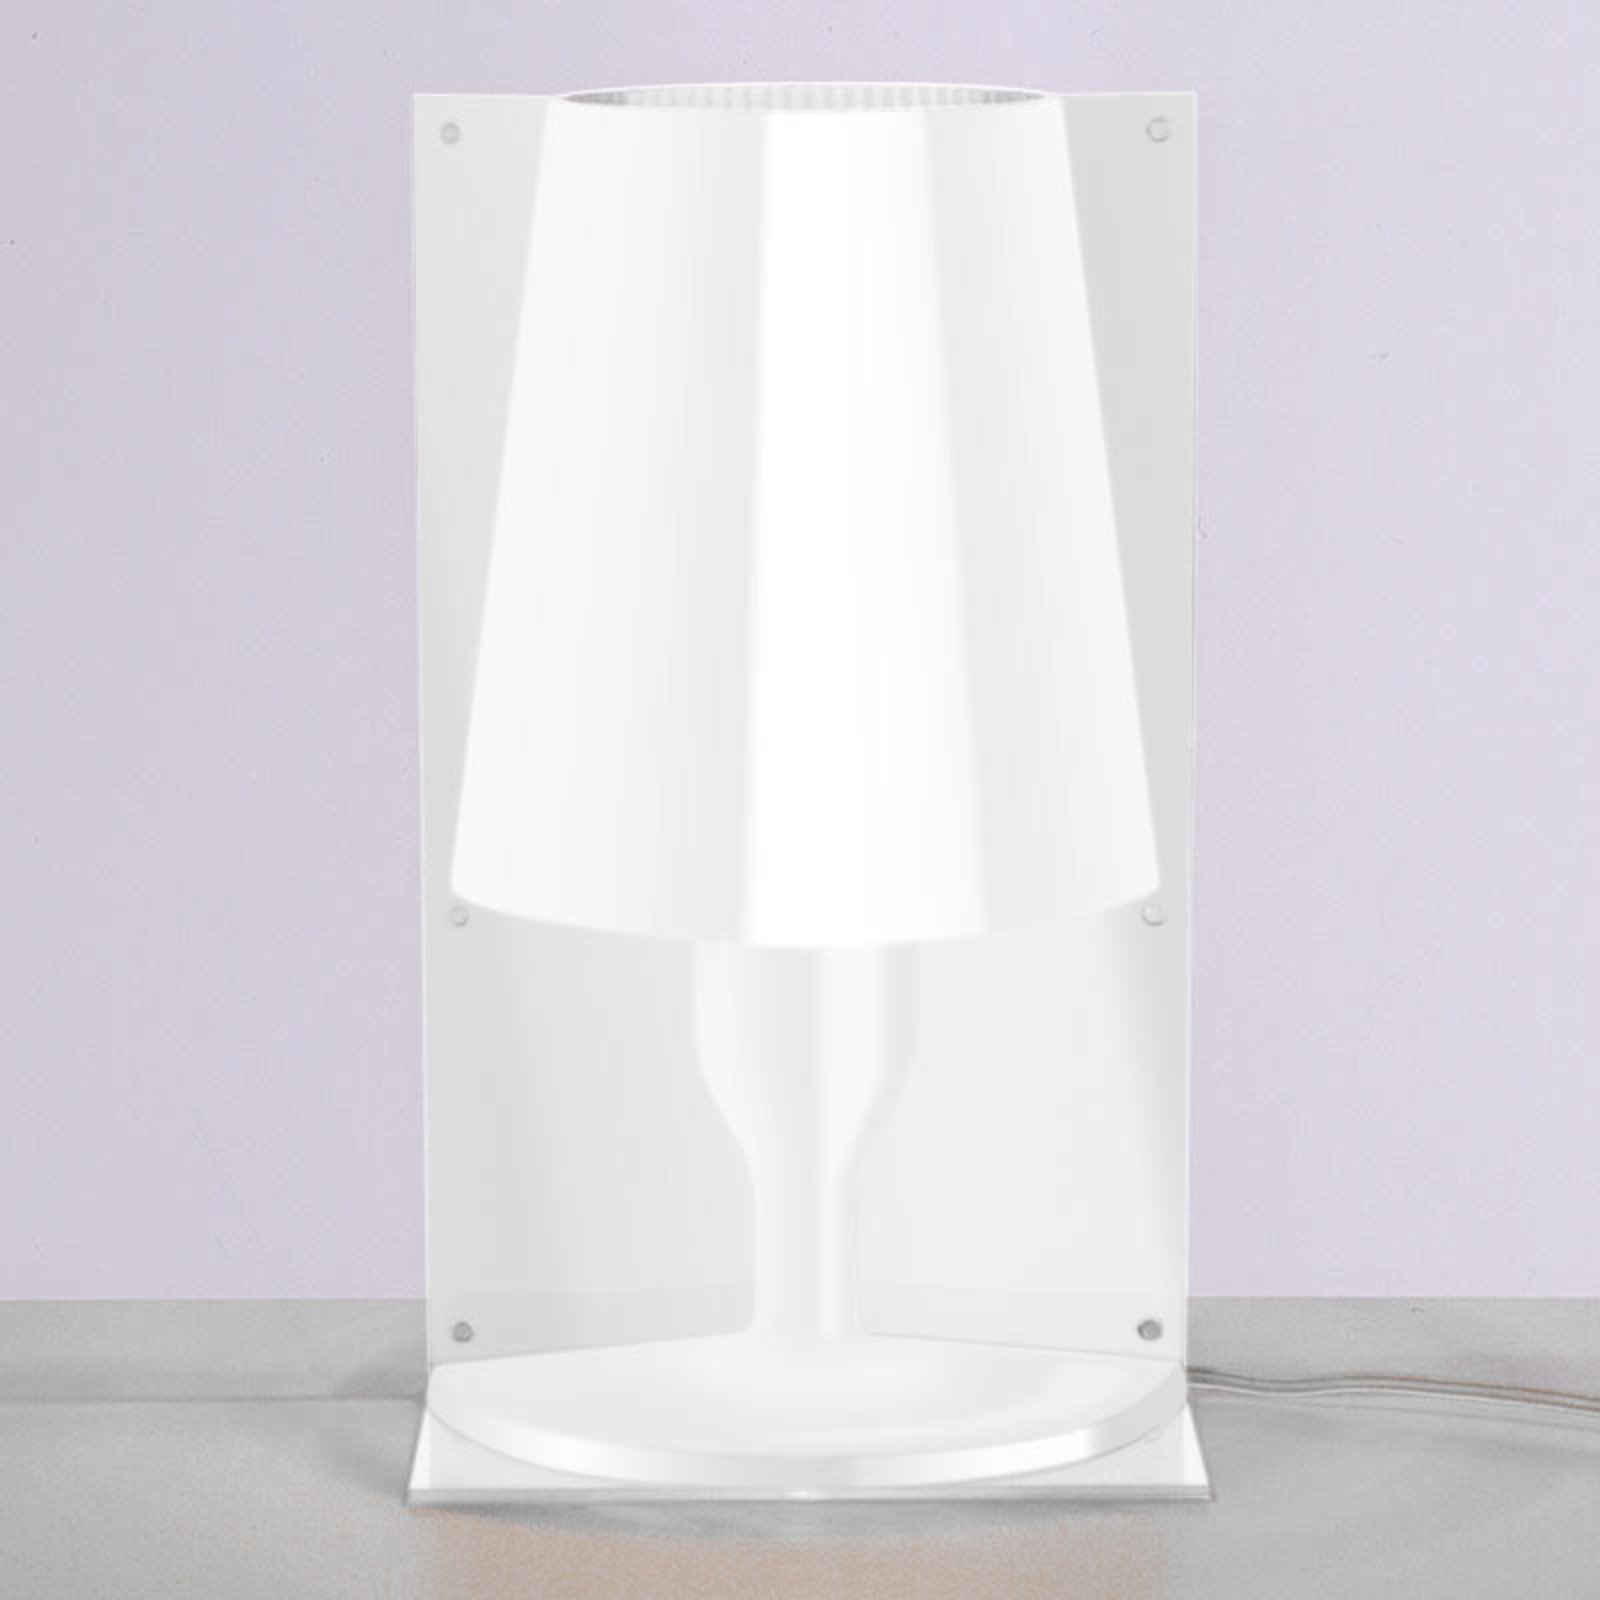 Kartell Take formatervezett asztali lámpa, fehér